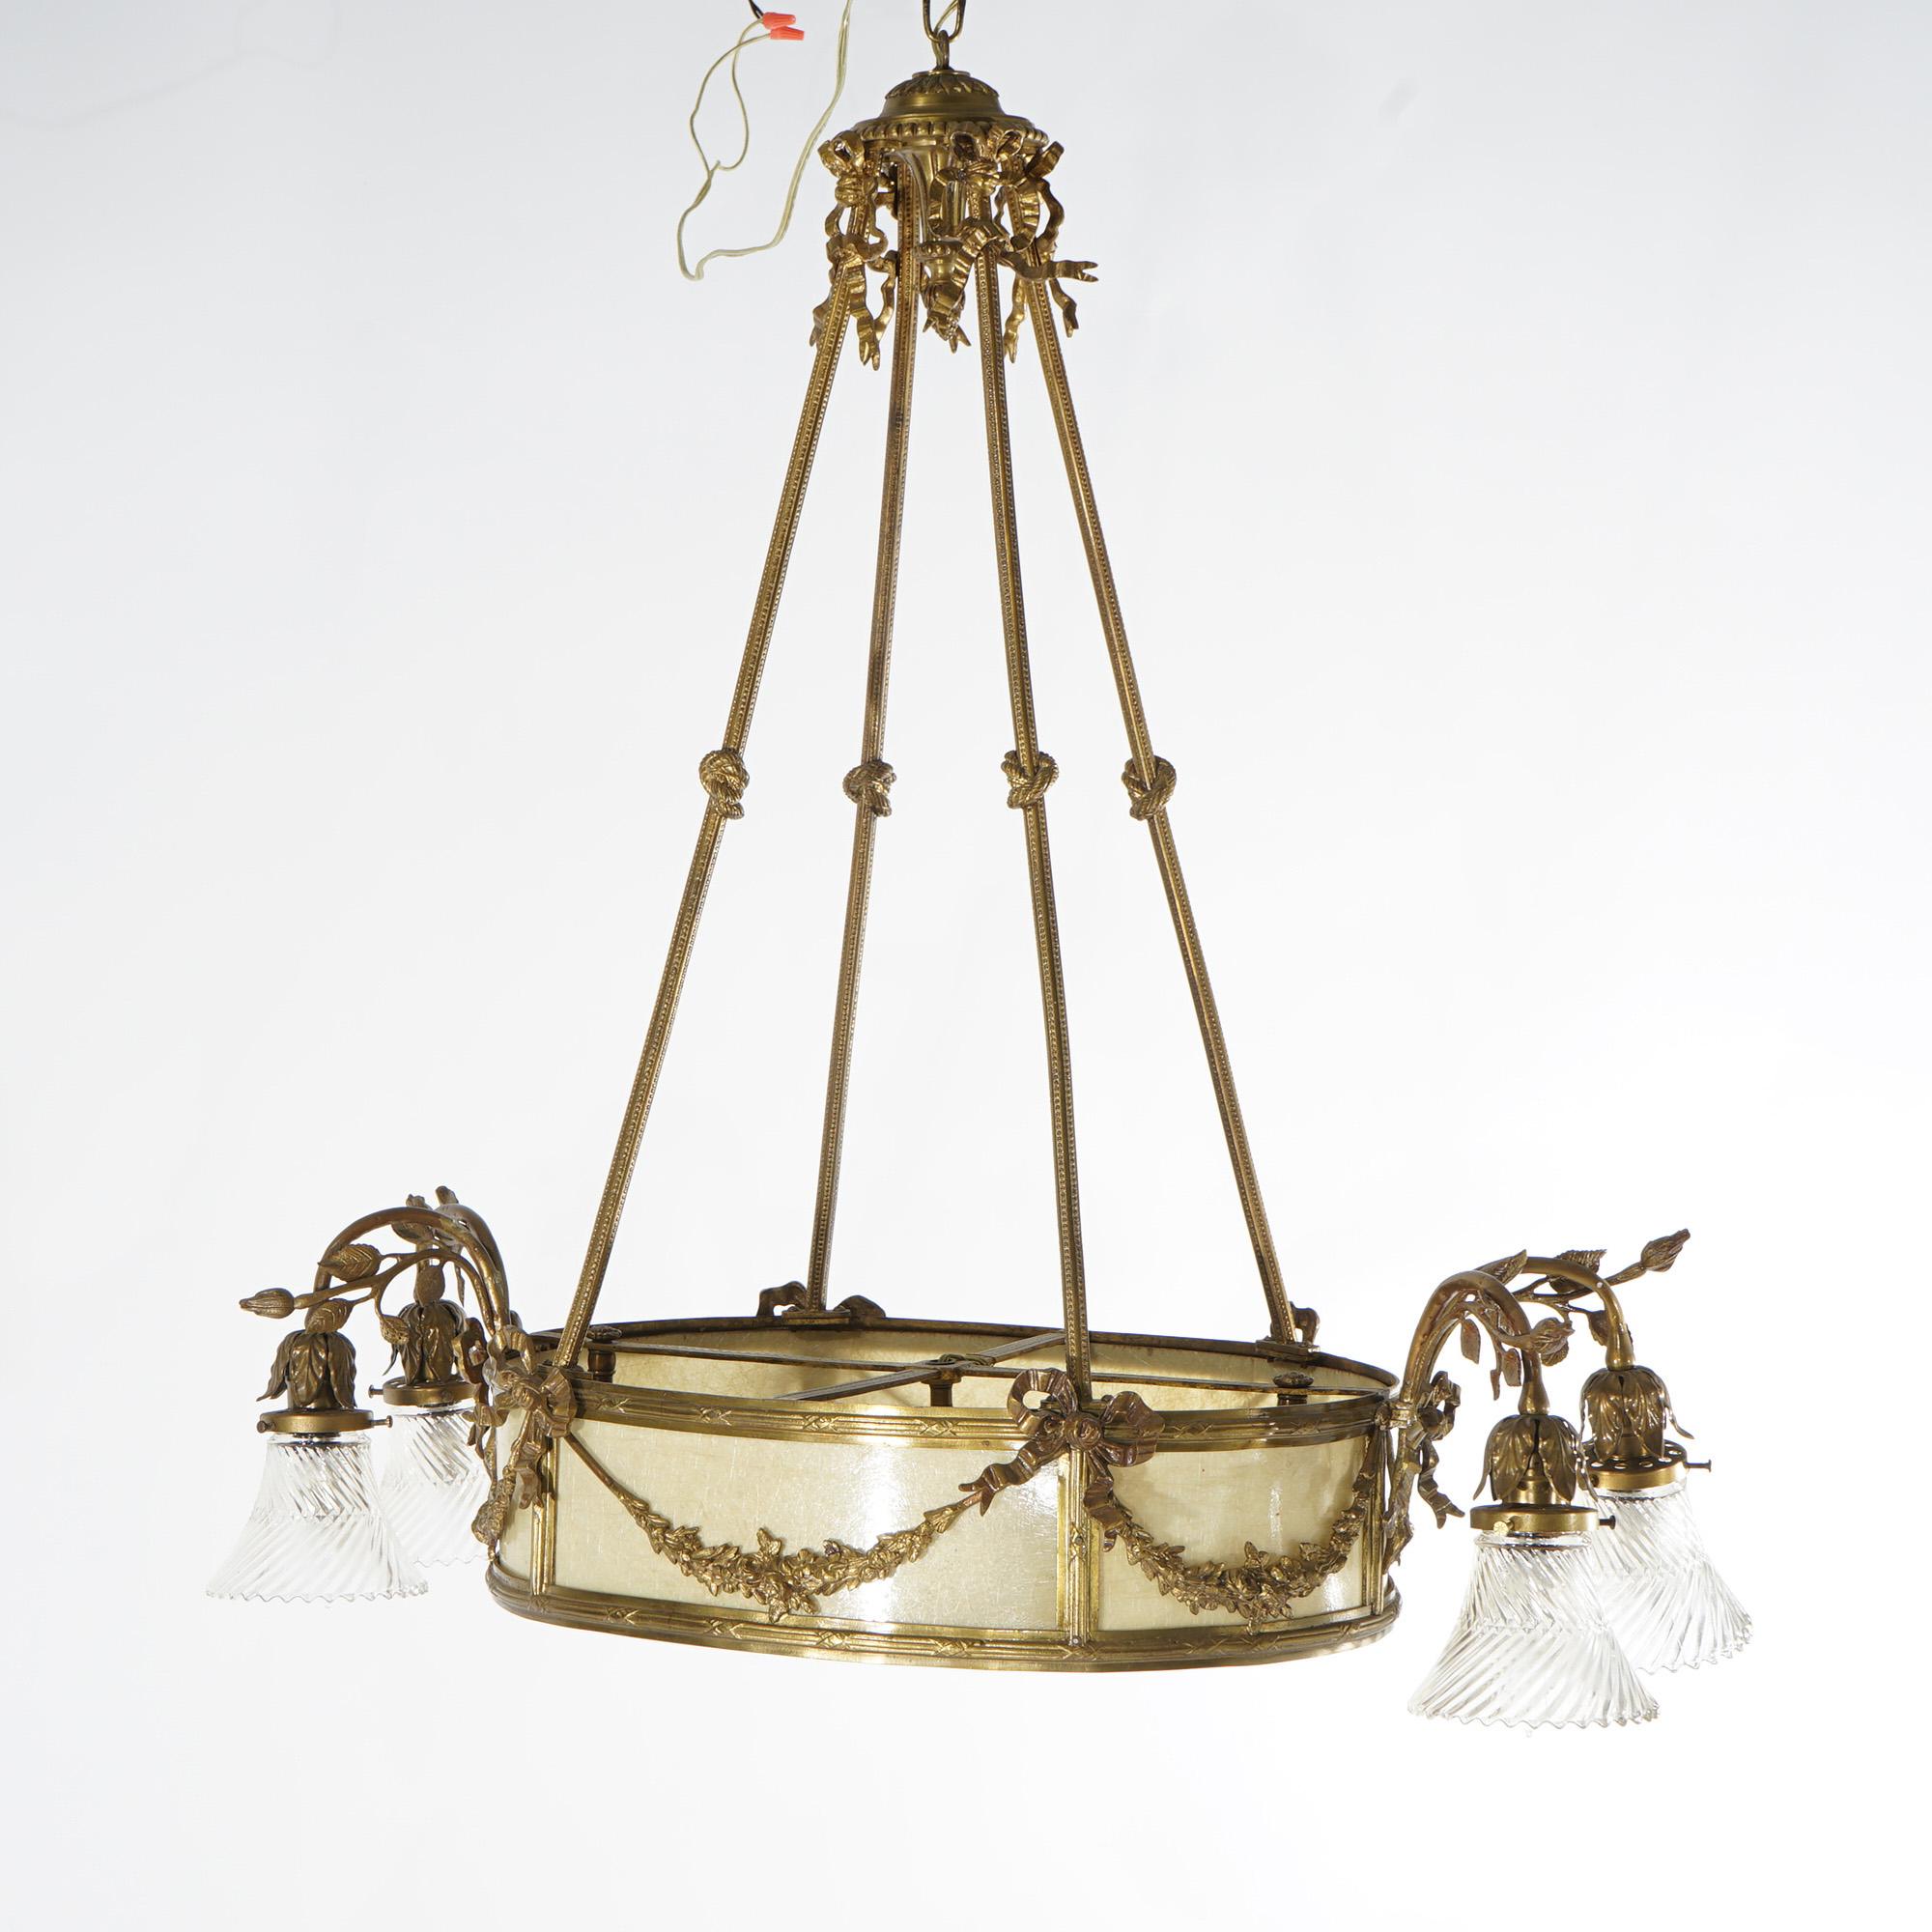 Eine antike Französisch Louis XV-Stil sechs-Licht-Kronleuchter bietet vergoldete Bronze Rahmen mit geknoteten Seil Form Tropfen, Glimmer Einsatz mit zwei Innenleuchten, vier Schnecke Form Arme in Lichter mit Glasschirmen enden, und foliate Elemente